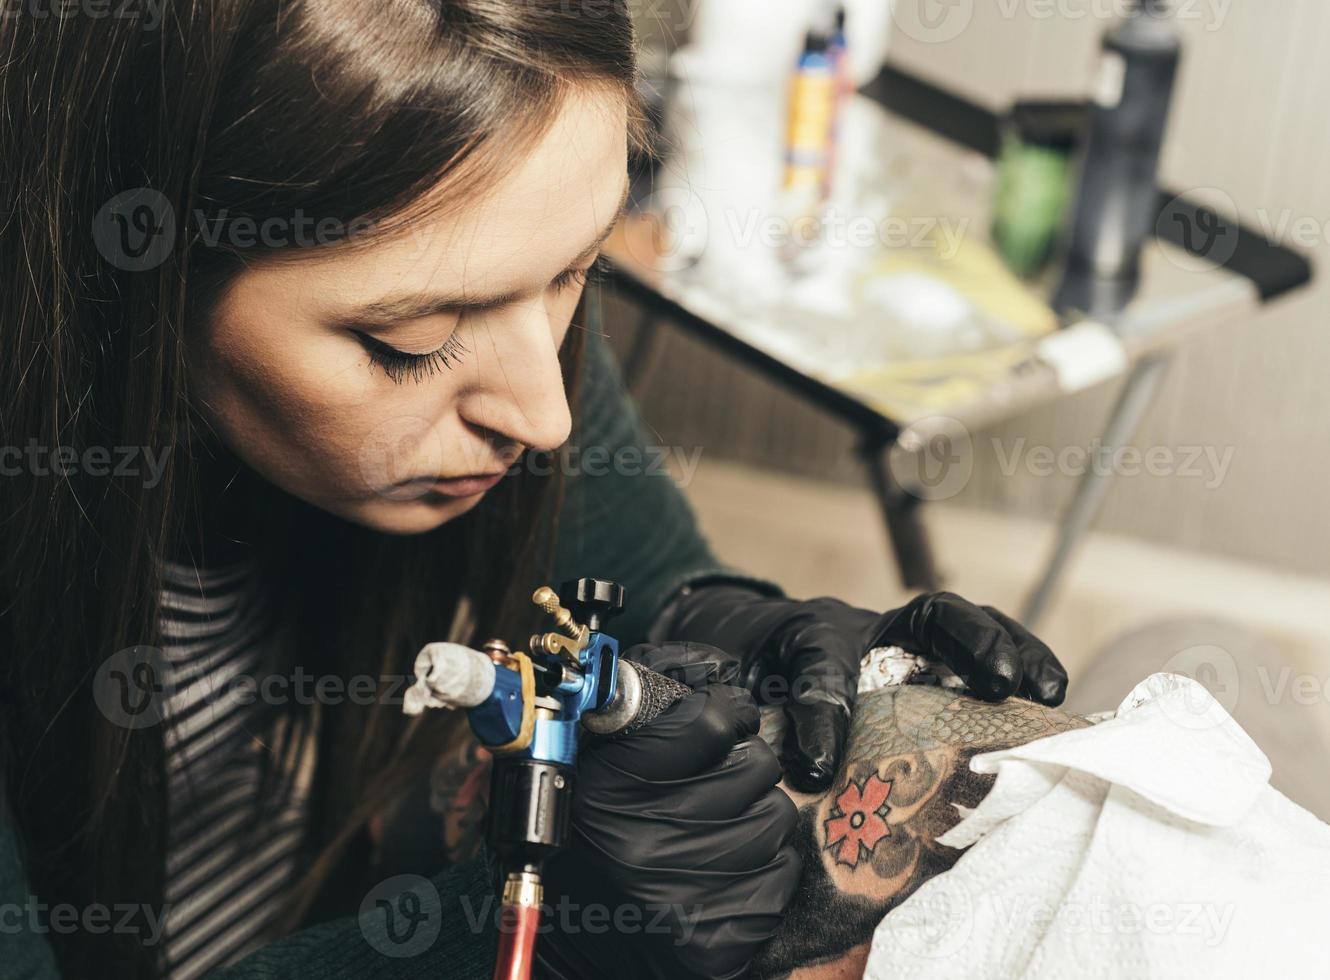 máquina de tatuaje de cerca. mujer creando una imagen a mano con ella en el salón foto